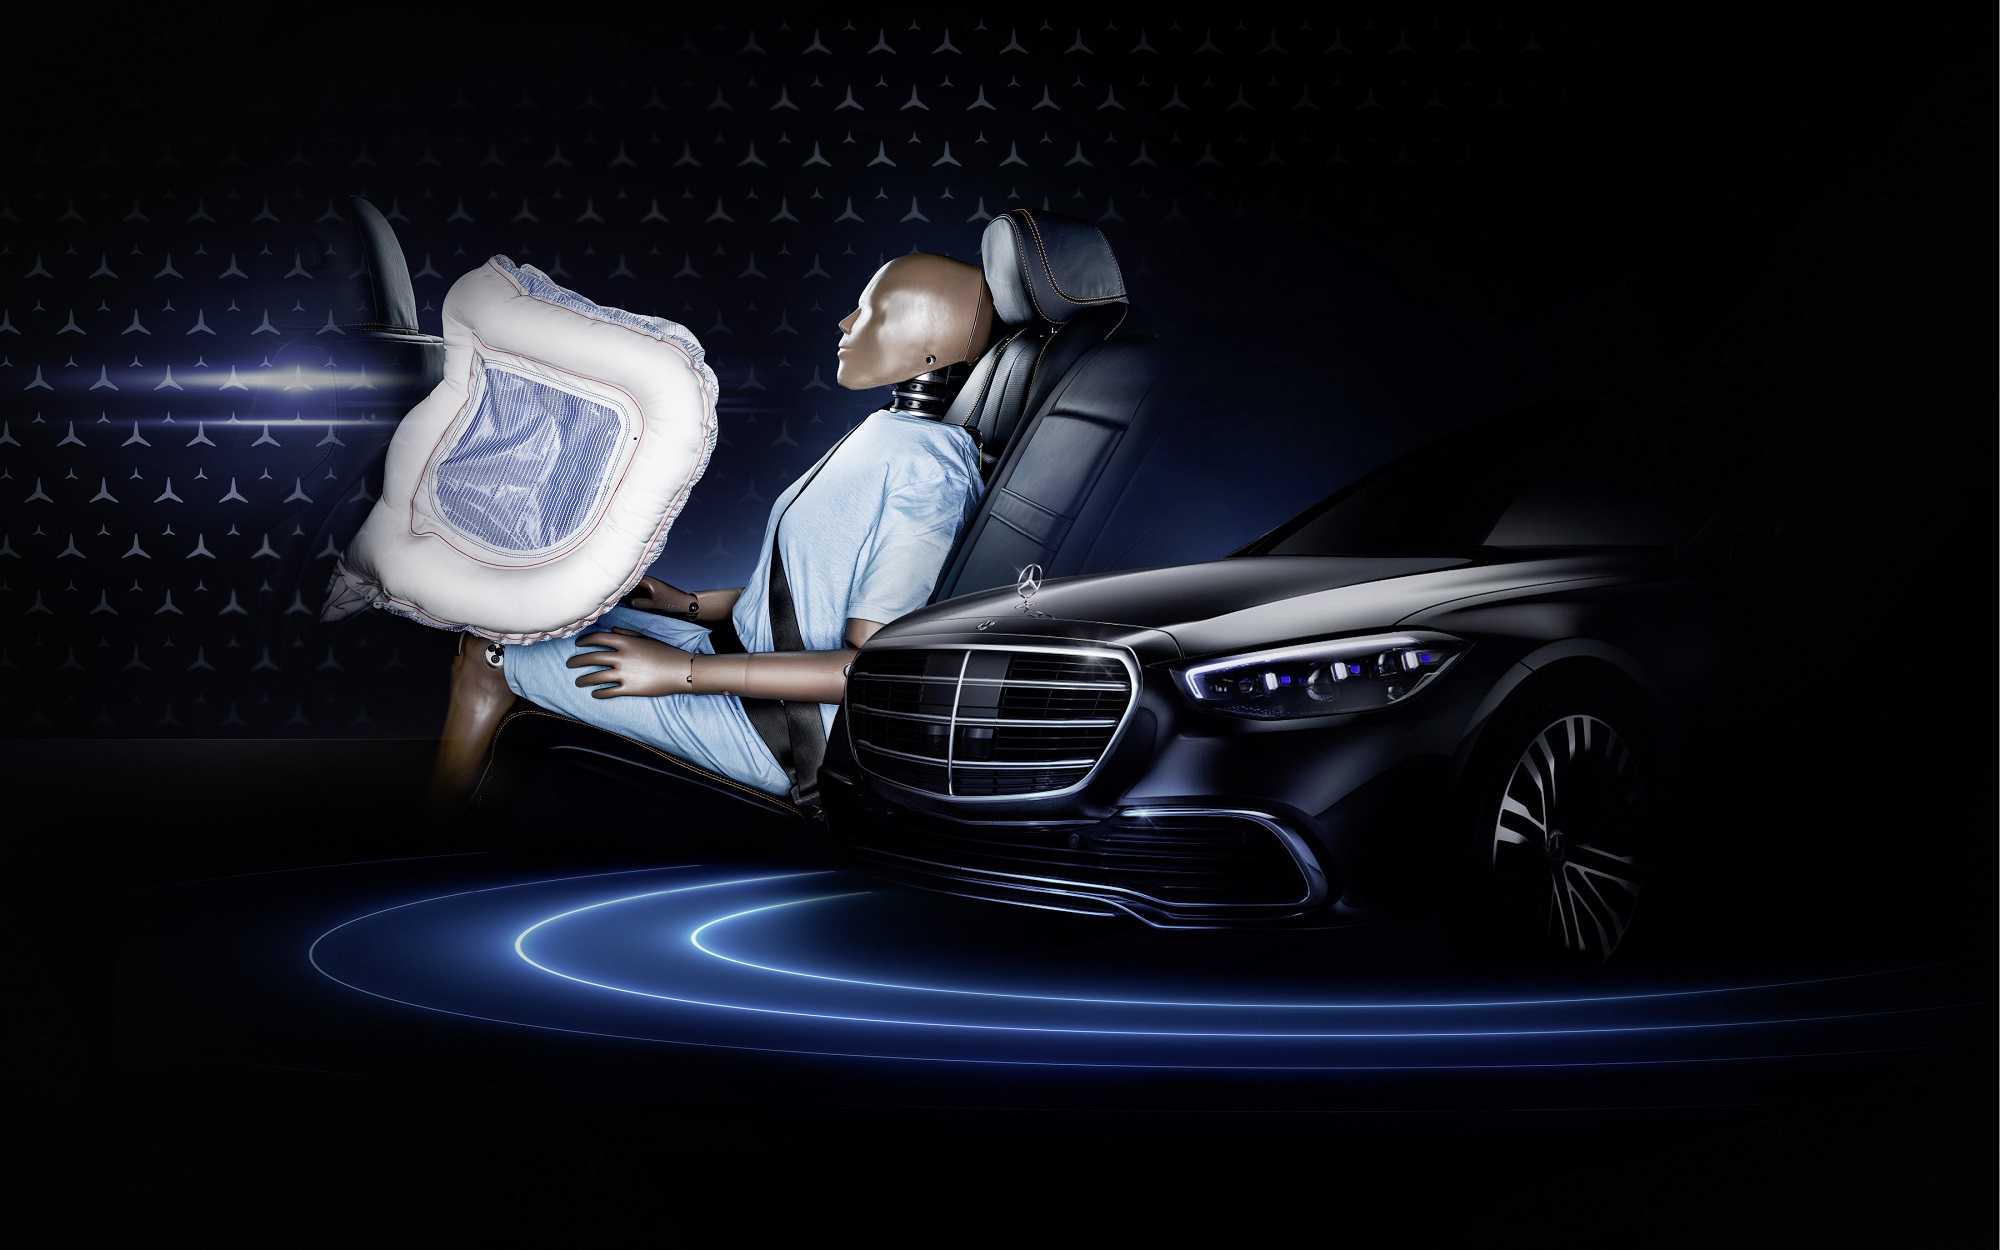 Mercedes Triedy S bude prvým autom s prednými airbagmi pre posádku vzadu